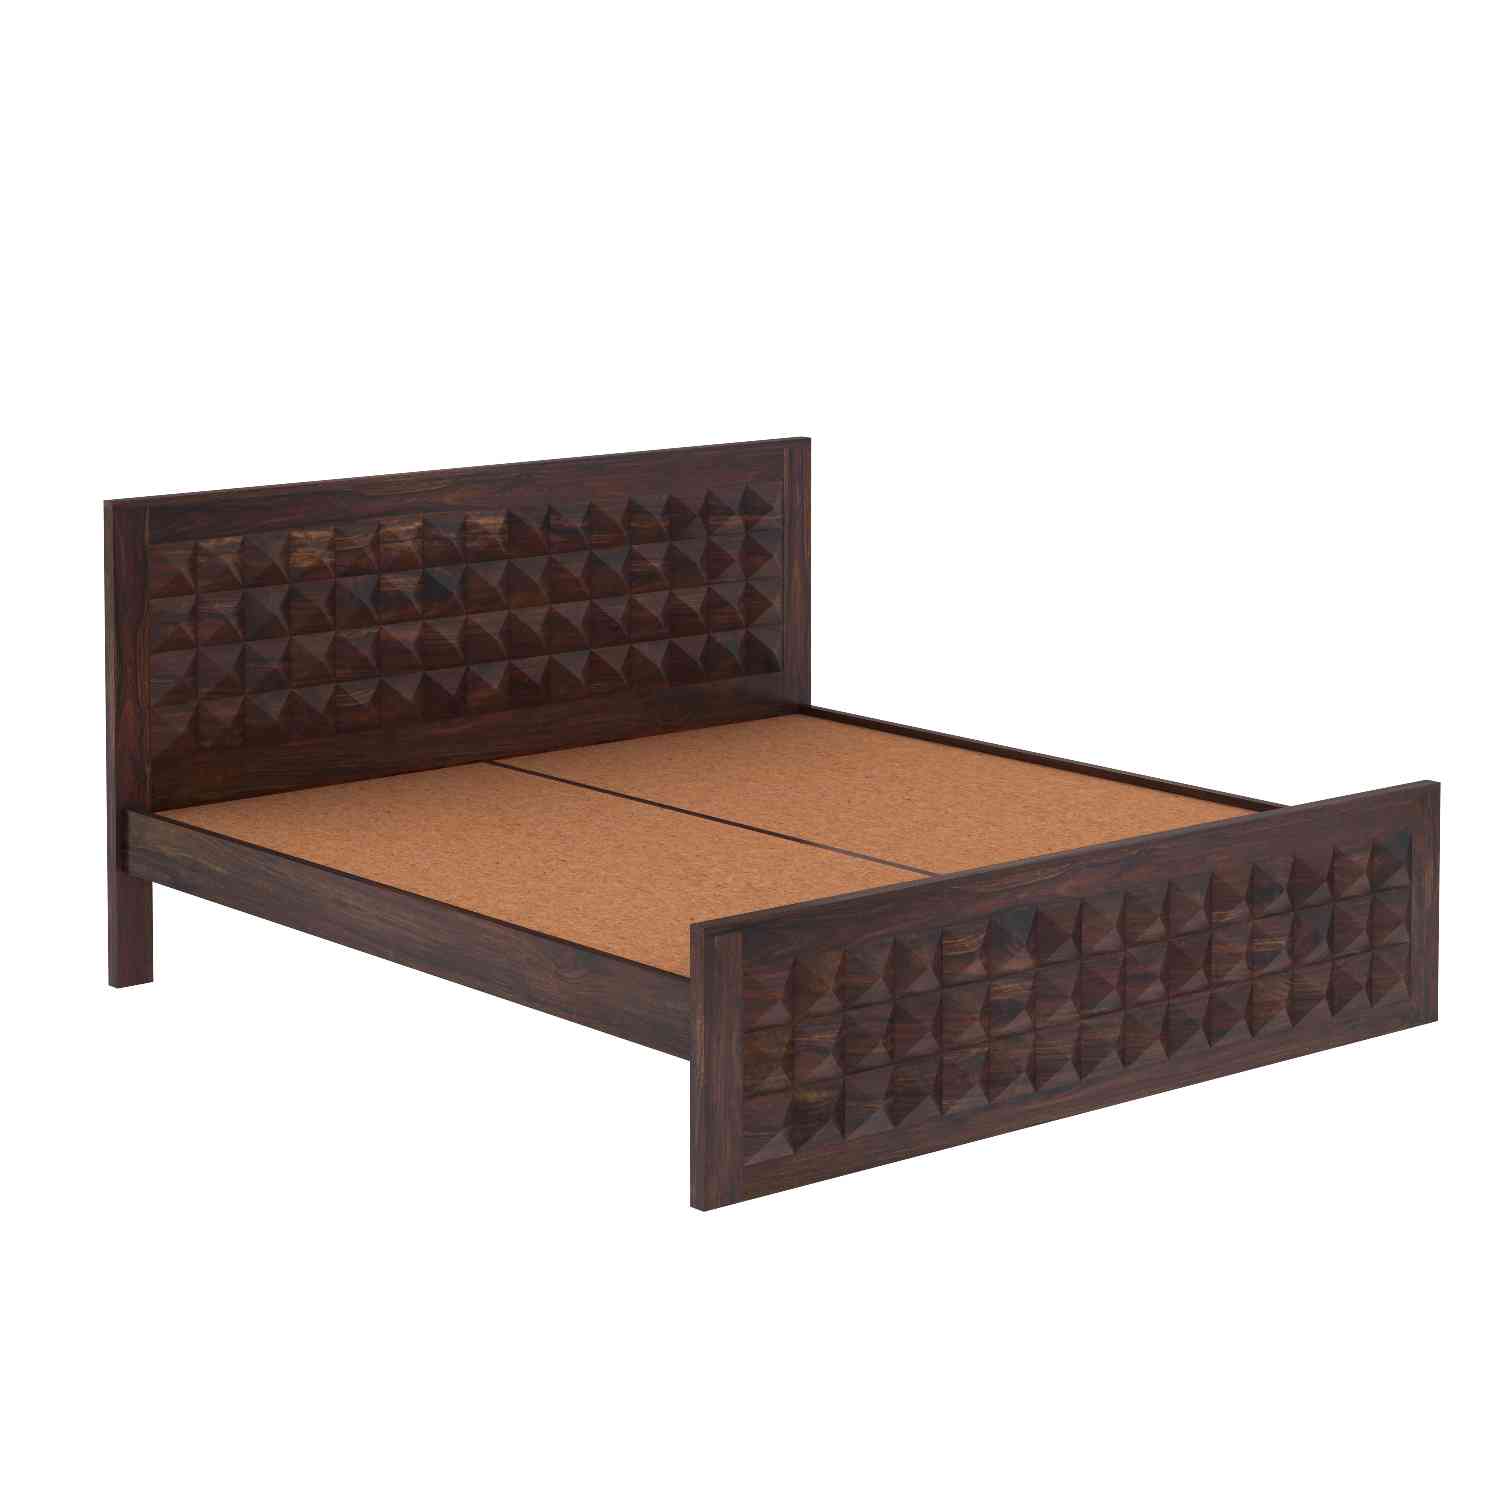 Sofia Solid Sheesham Wood Bed Without Storage (King Size, Walnut Finish)